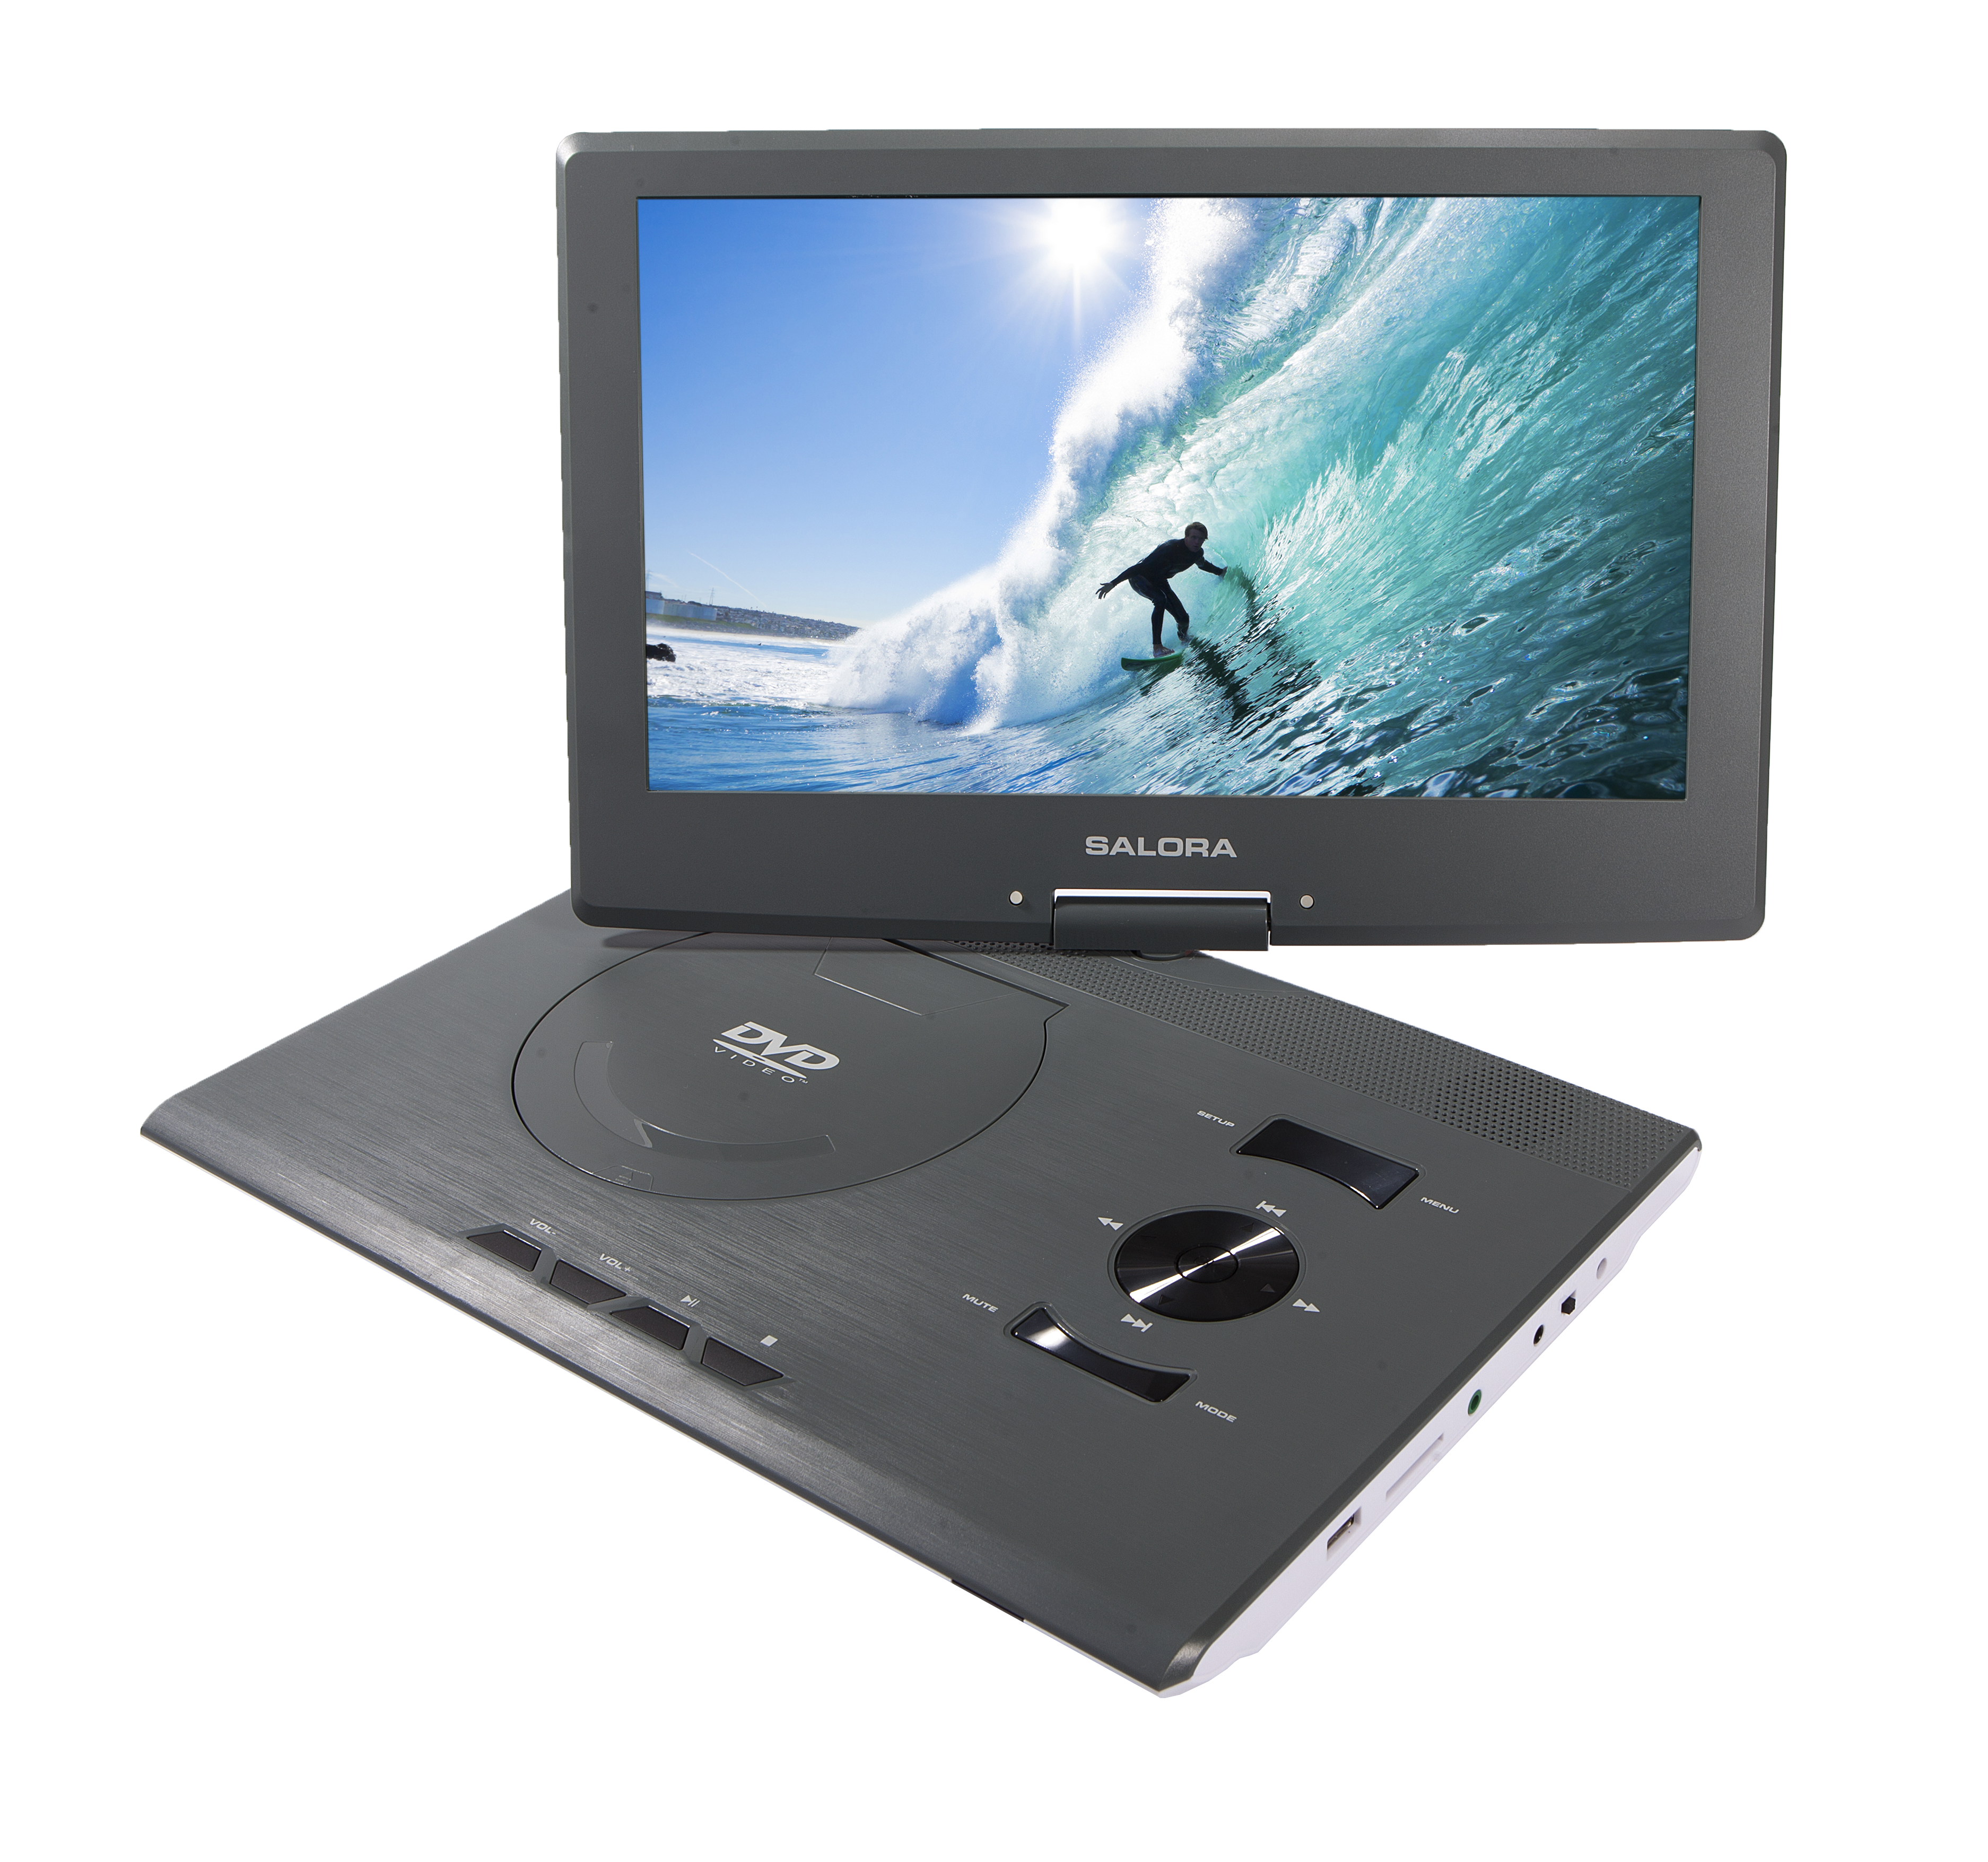 DVP1400 SALORA Portabler DVD Player., Grau